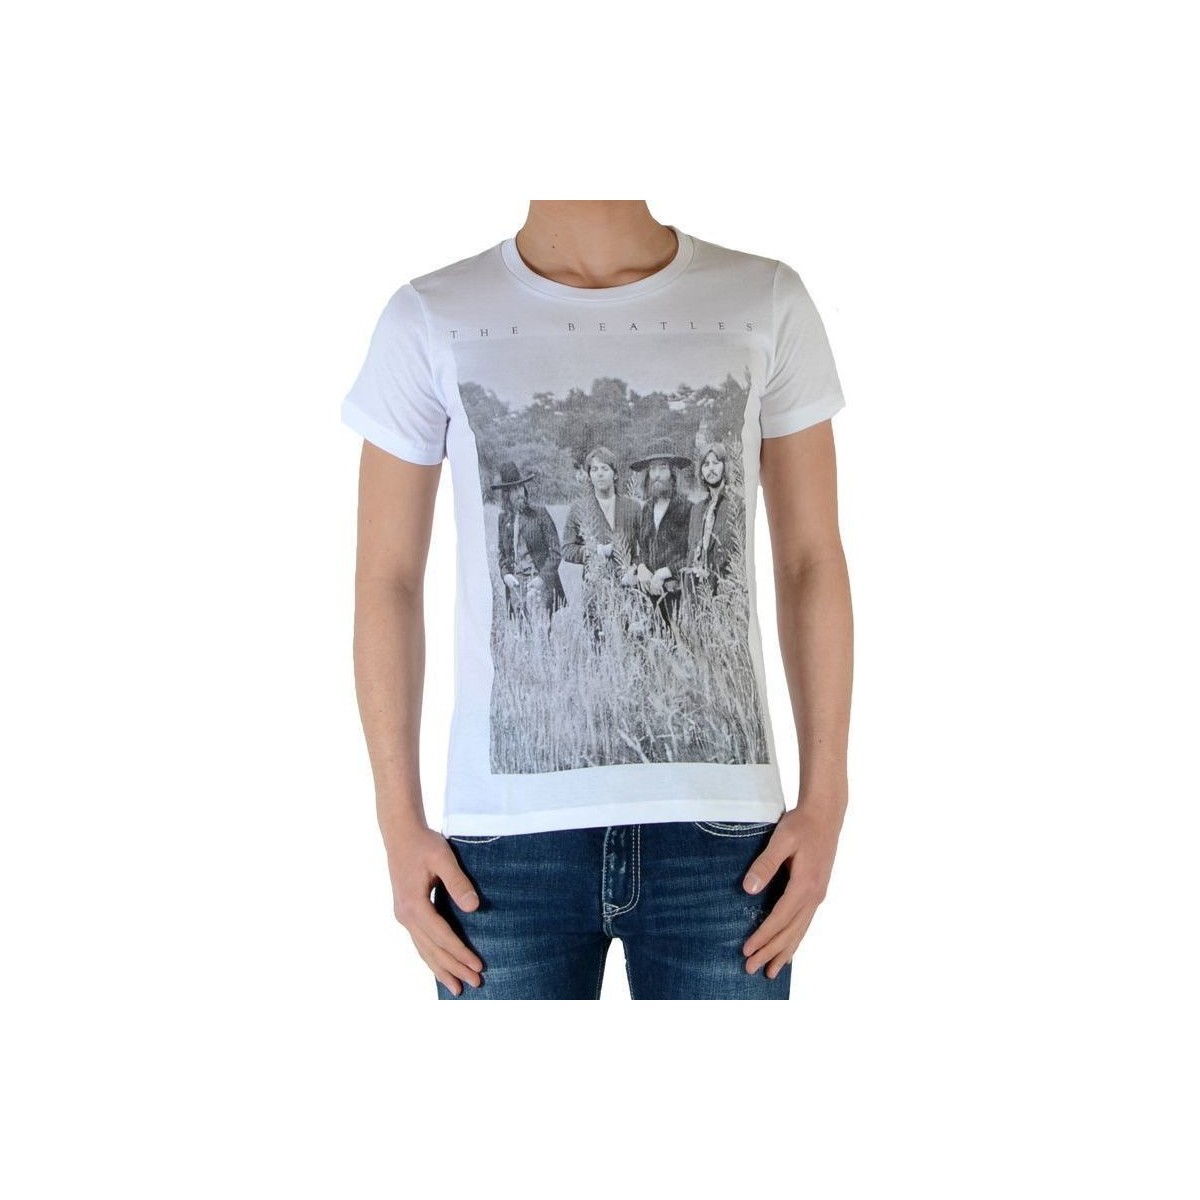 Abbigliamento Bambino T-shirt maniche corte Eleven Paris 28792 Bianco